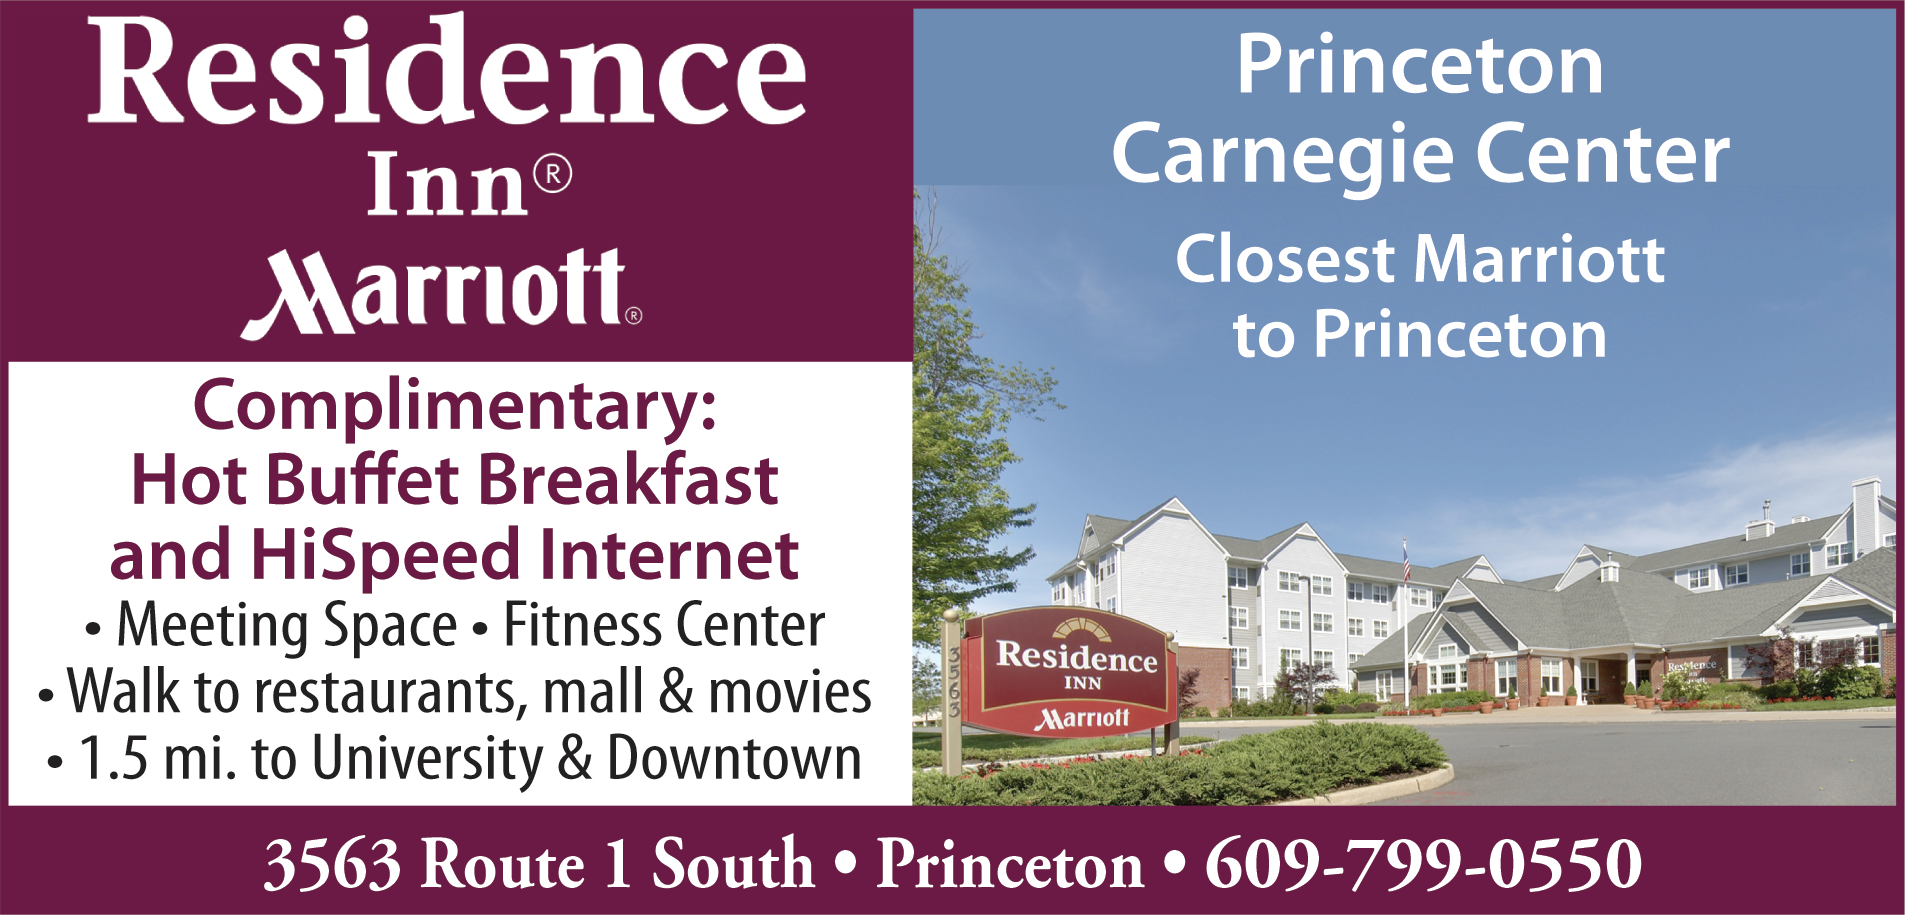 Residence Inn Carnegie Center Print Ad